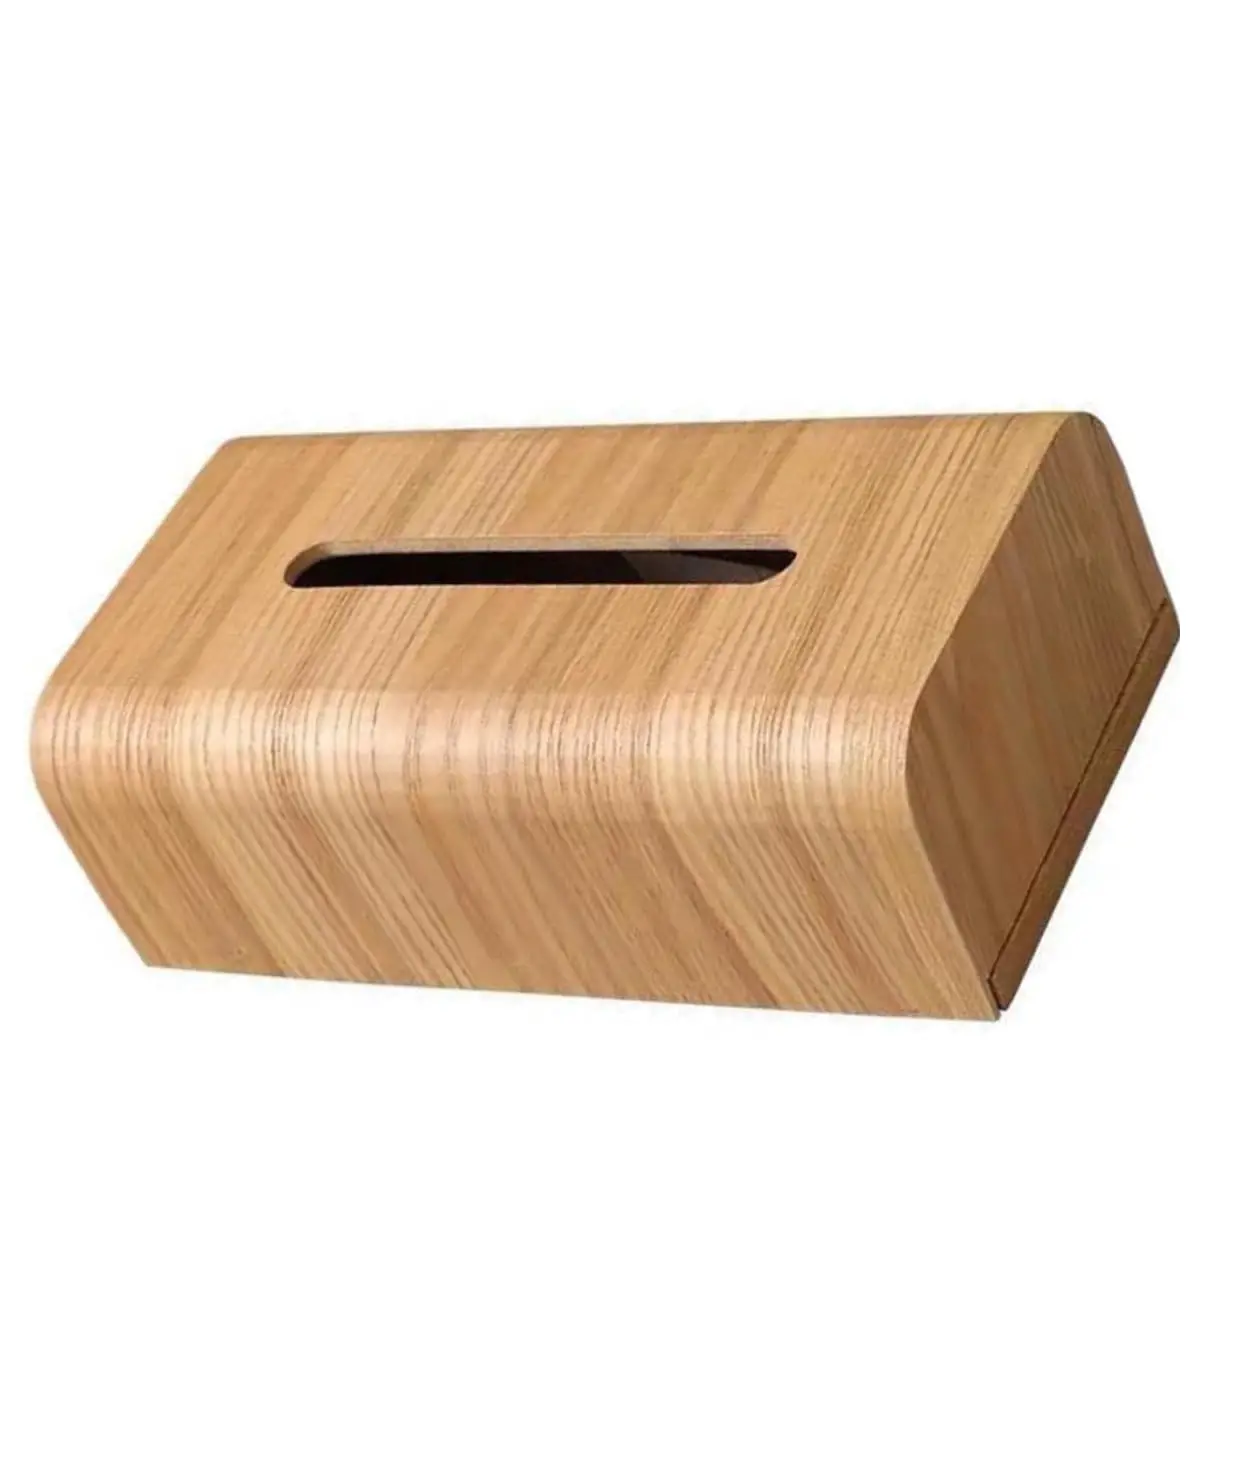 1 scatola di tessuto in legno scatola di carta giapponese da scrivania in legno copertura del tessuto per il viso scatola Organizer per tovagliolo